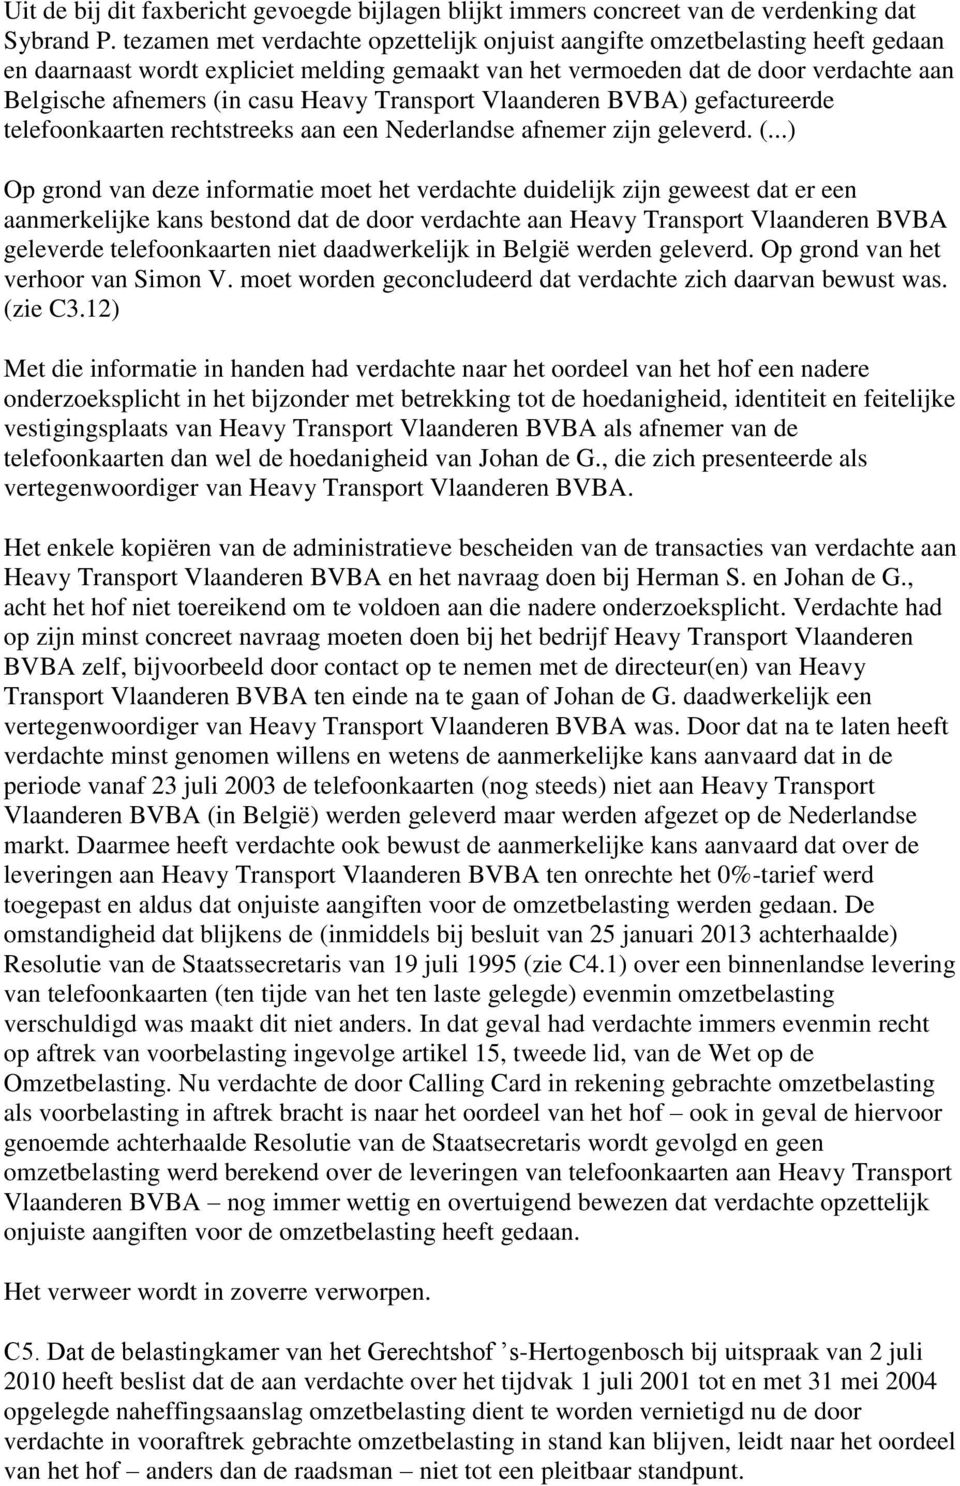 Heavy Transport Vlaanderen BVBA) gefactureerde telefoonkaarten rechtstreeks aan een Nederlandse afnemer zijn geleverd. (.